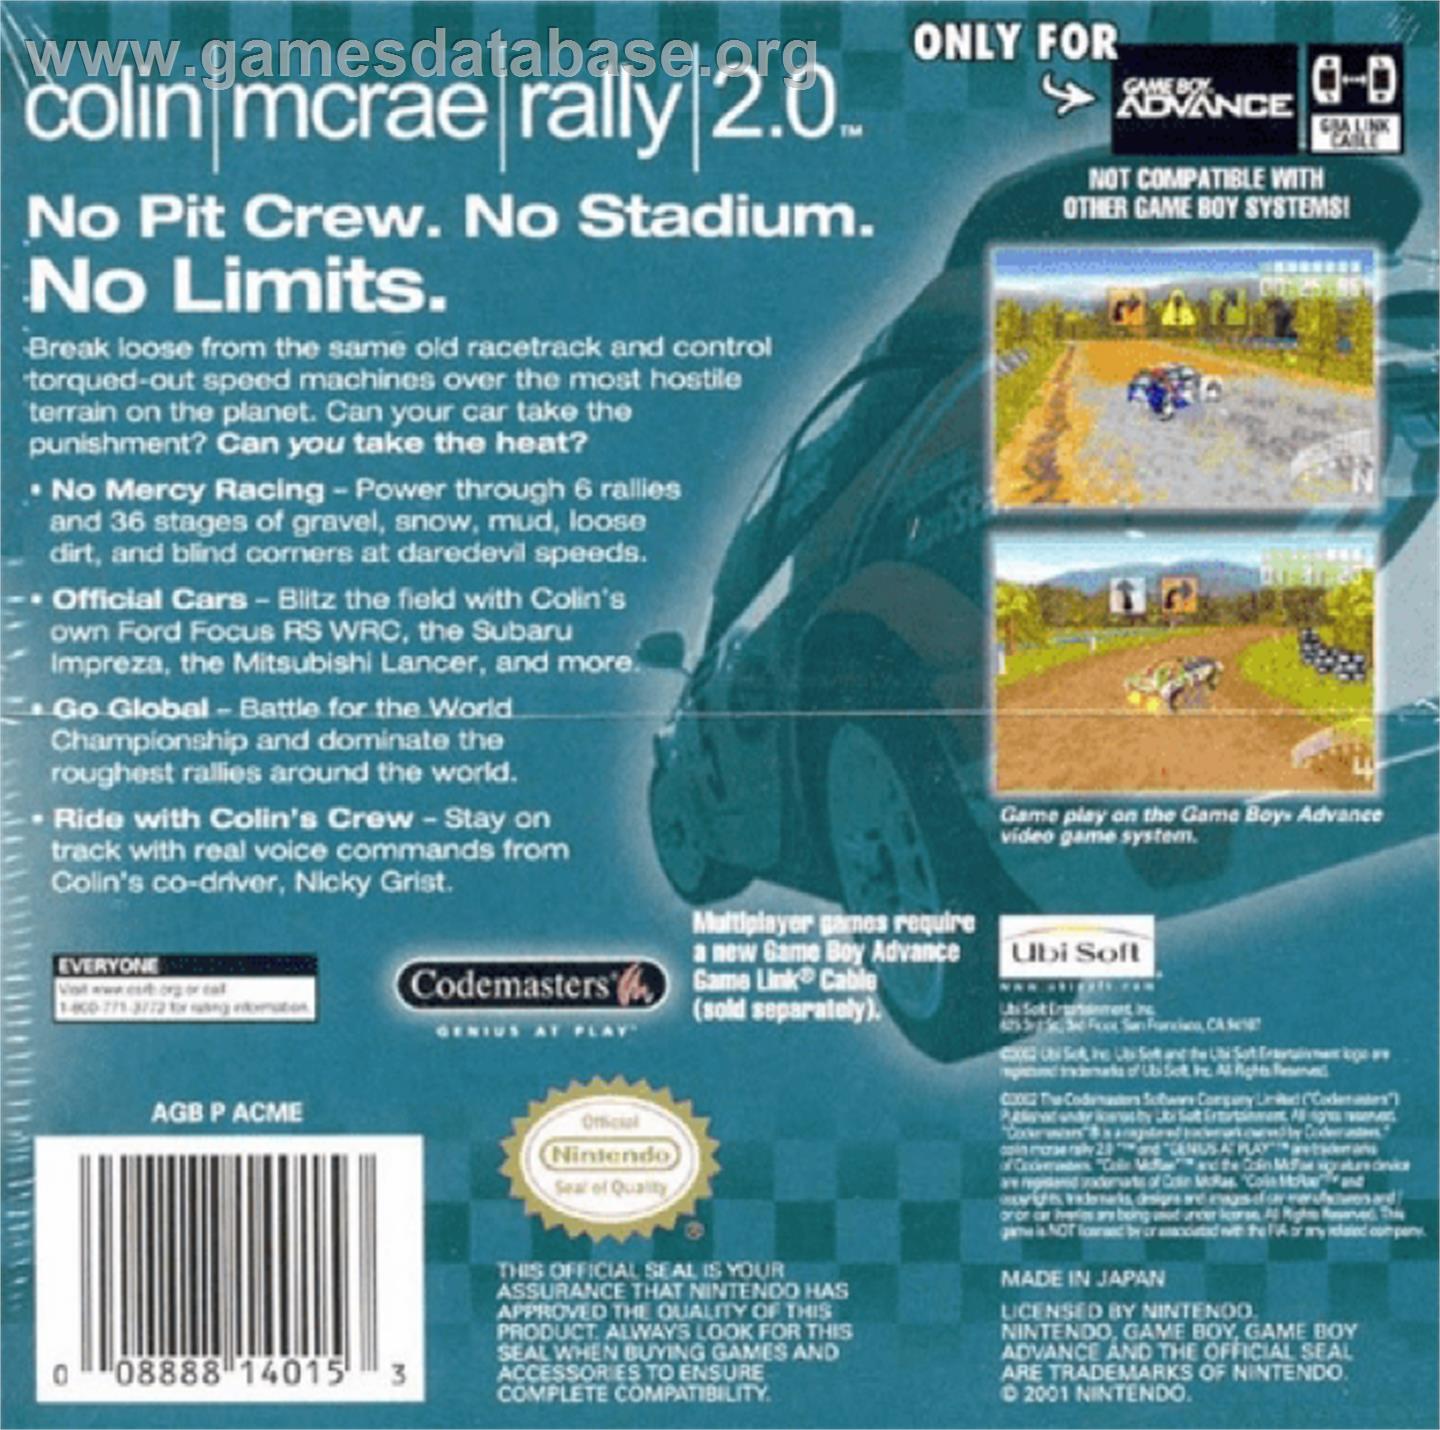 Colin McRae Rally 2.0 - Nintendo Game Boy Advance - Artwork - Box Back